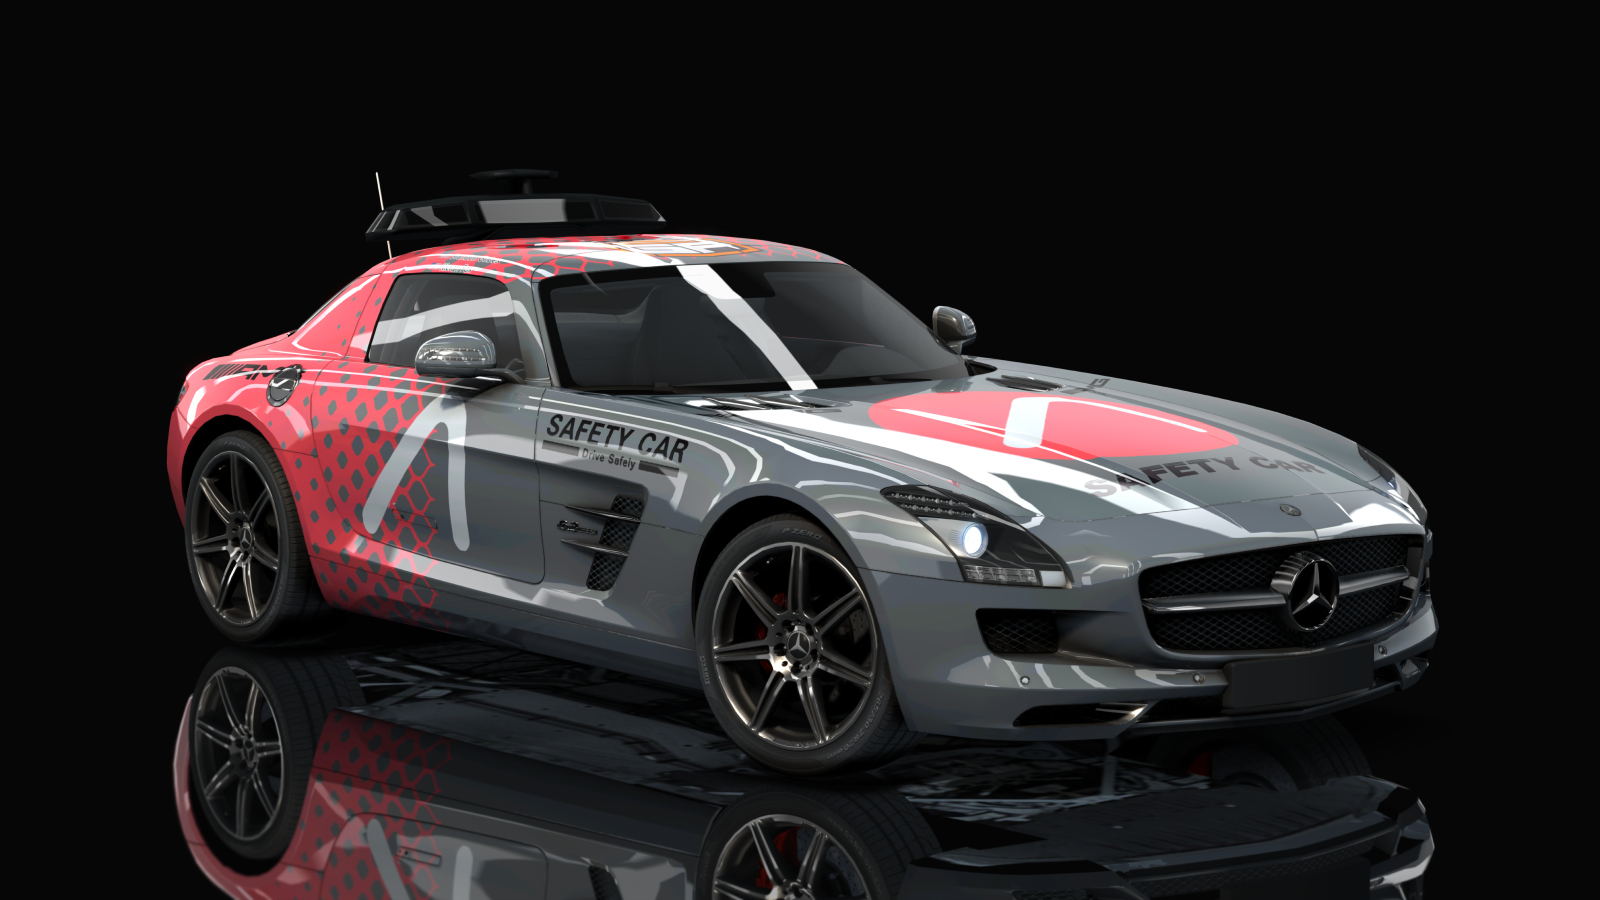 Mercedes SLS Safety Car, skin ACF1 ARC Safety Car